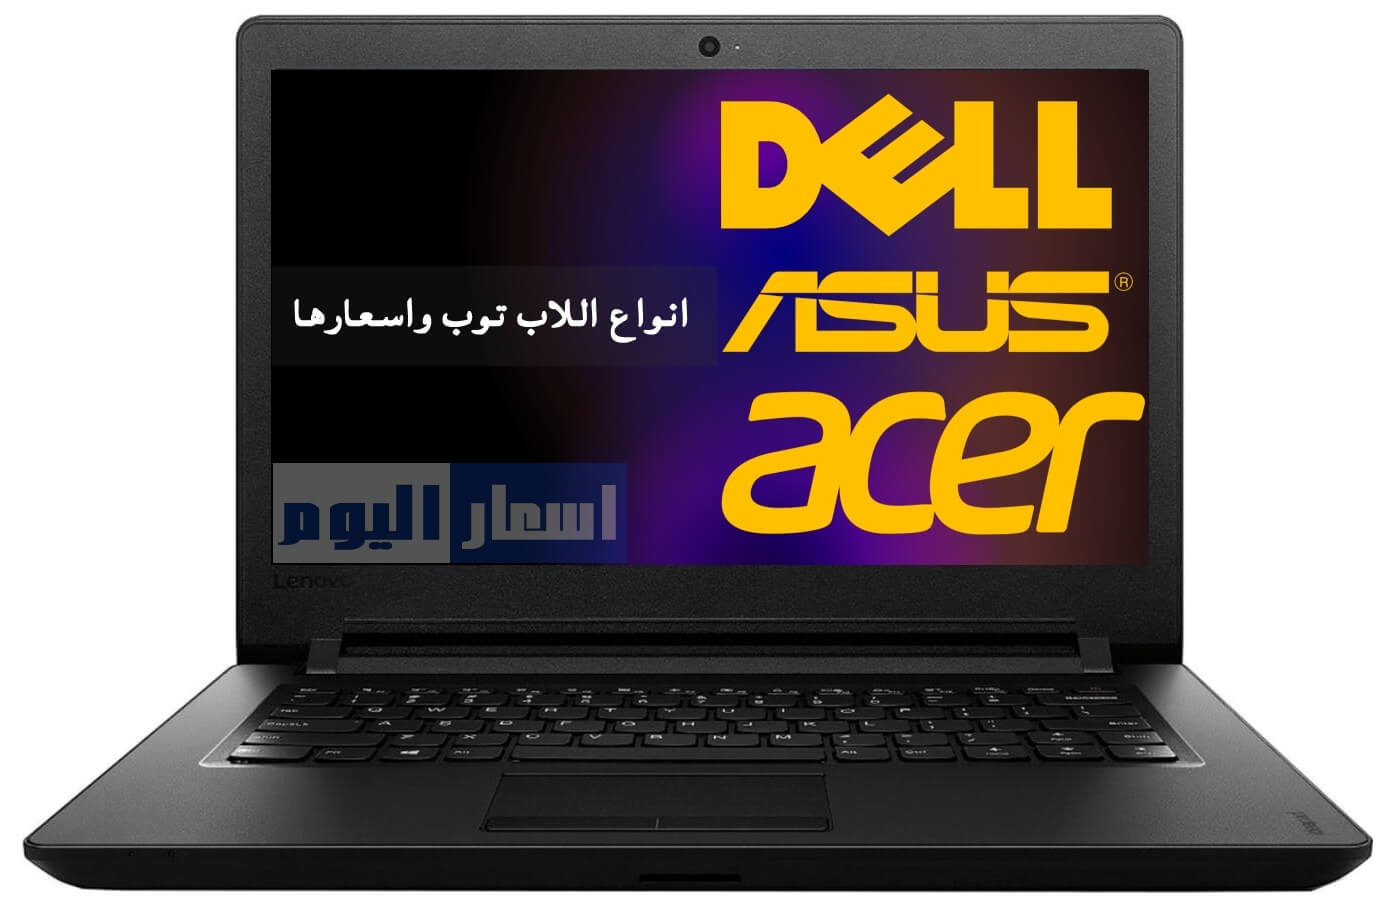 اسعار اللاب توب فى مصر 2021 جميع الماركات Laptops Prices in Egypt 2021